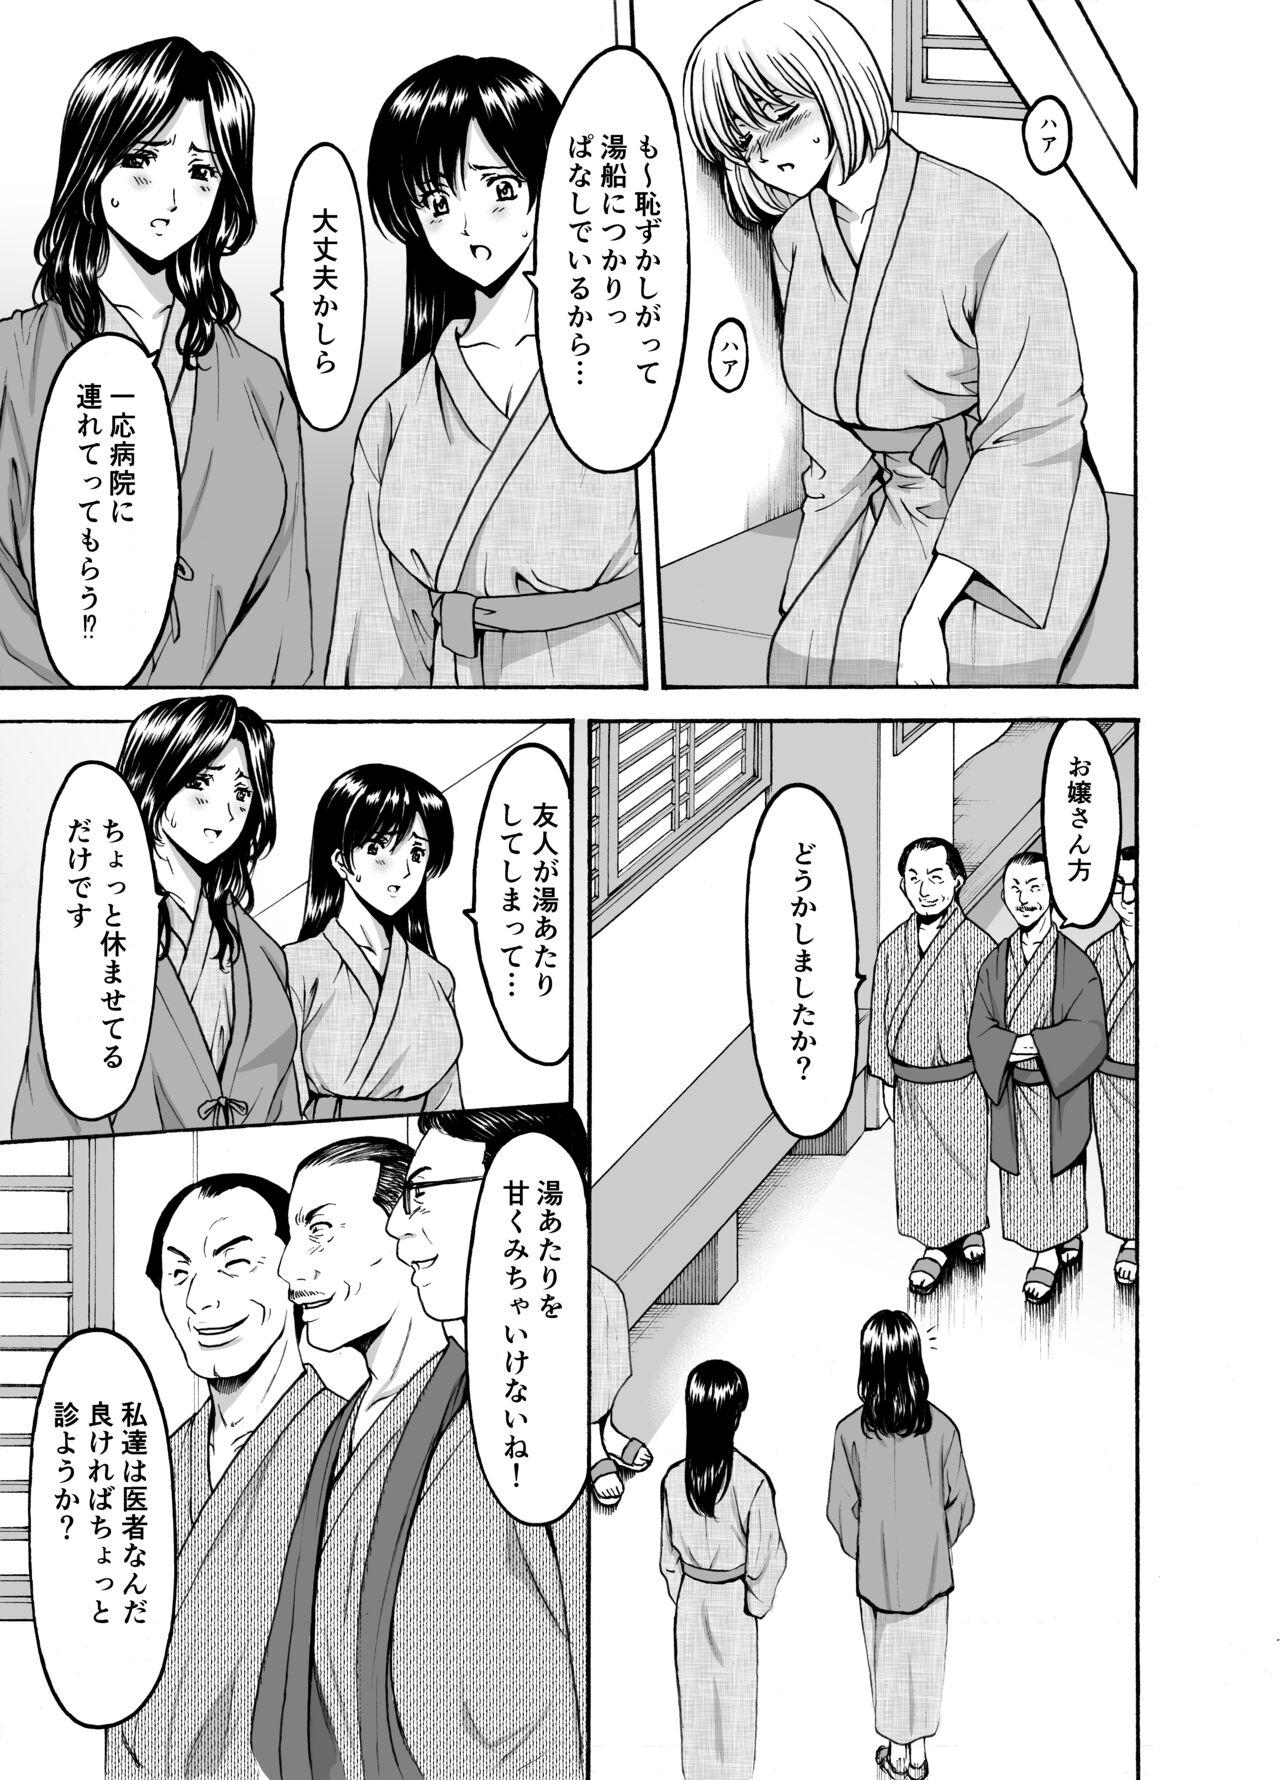 Boob Hitozuma × 3 Yukemuri Ryou Jou 1 - Original Deutsch - Page 7